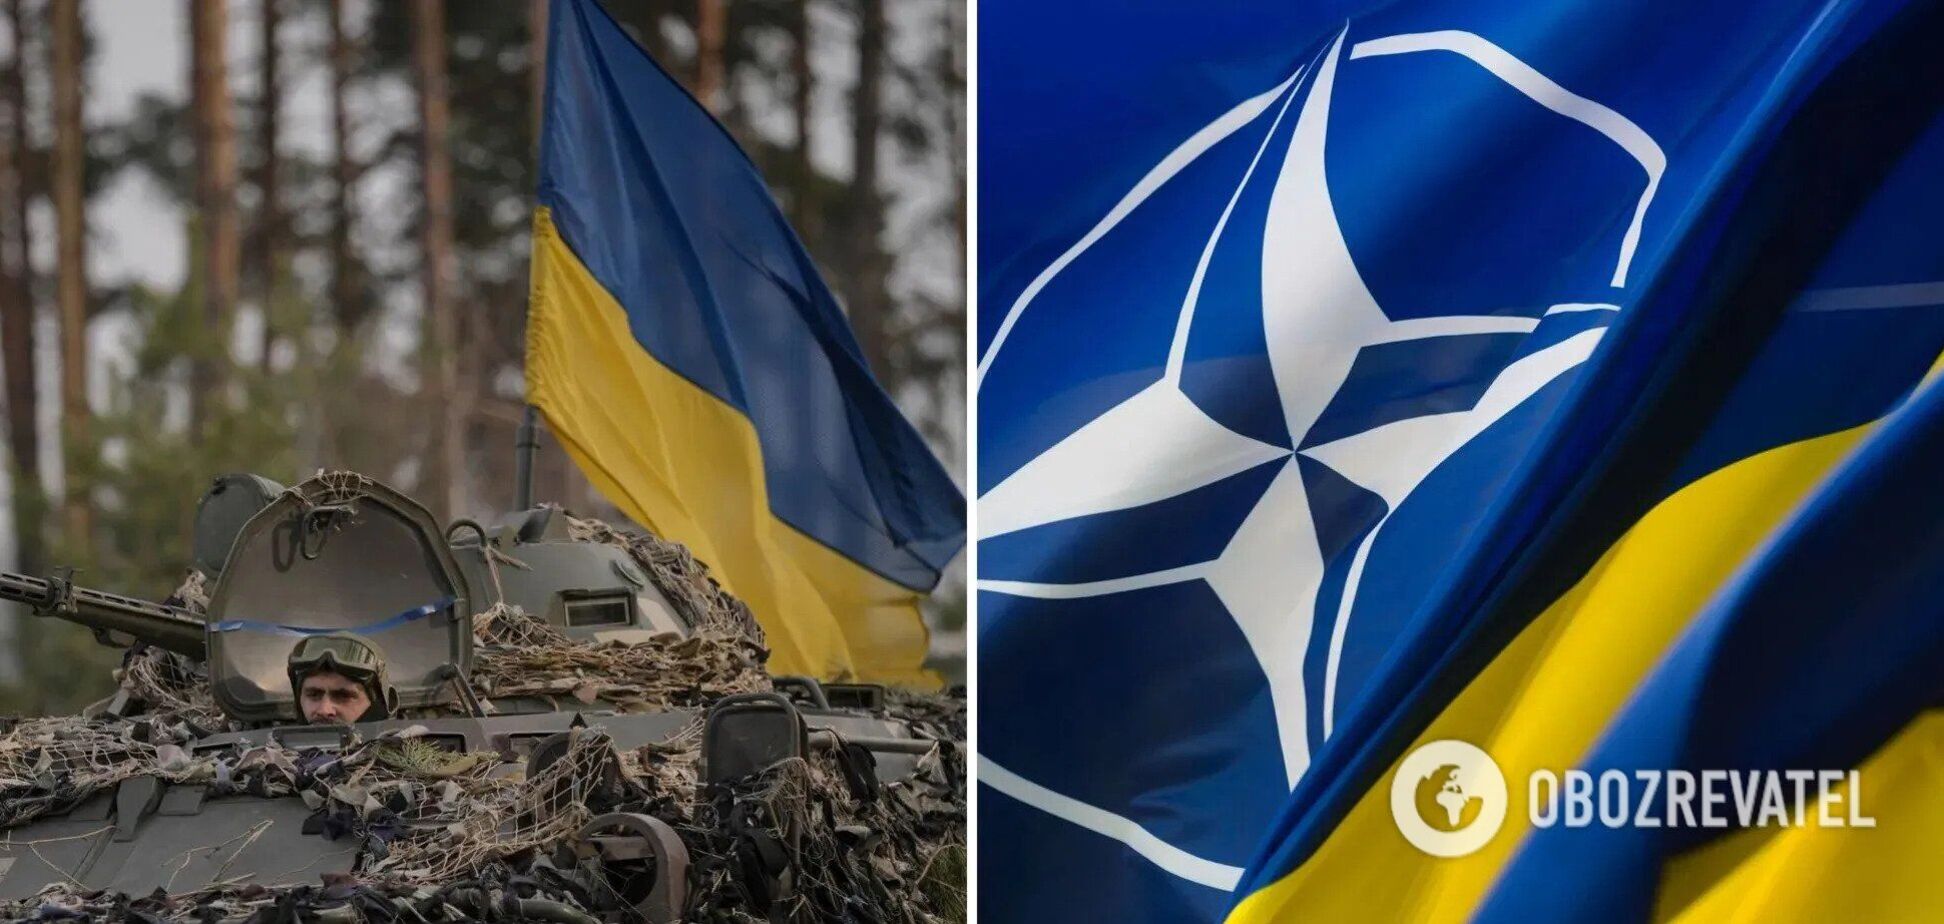 'Позиция четкая и не изменилась': в НАТО прокомментировали заявление об обмене территории Украины на членство